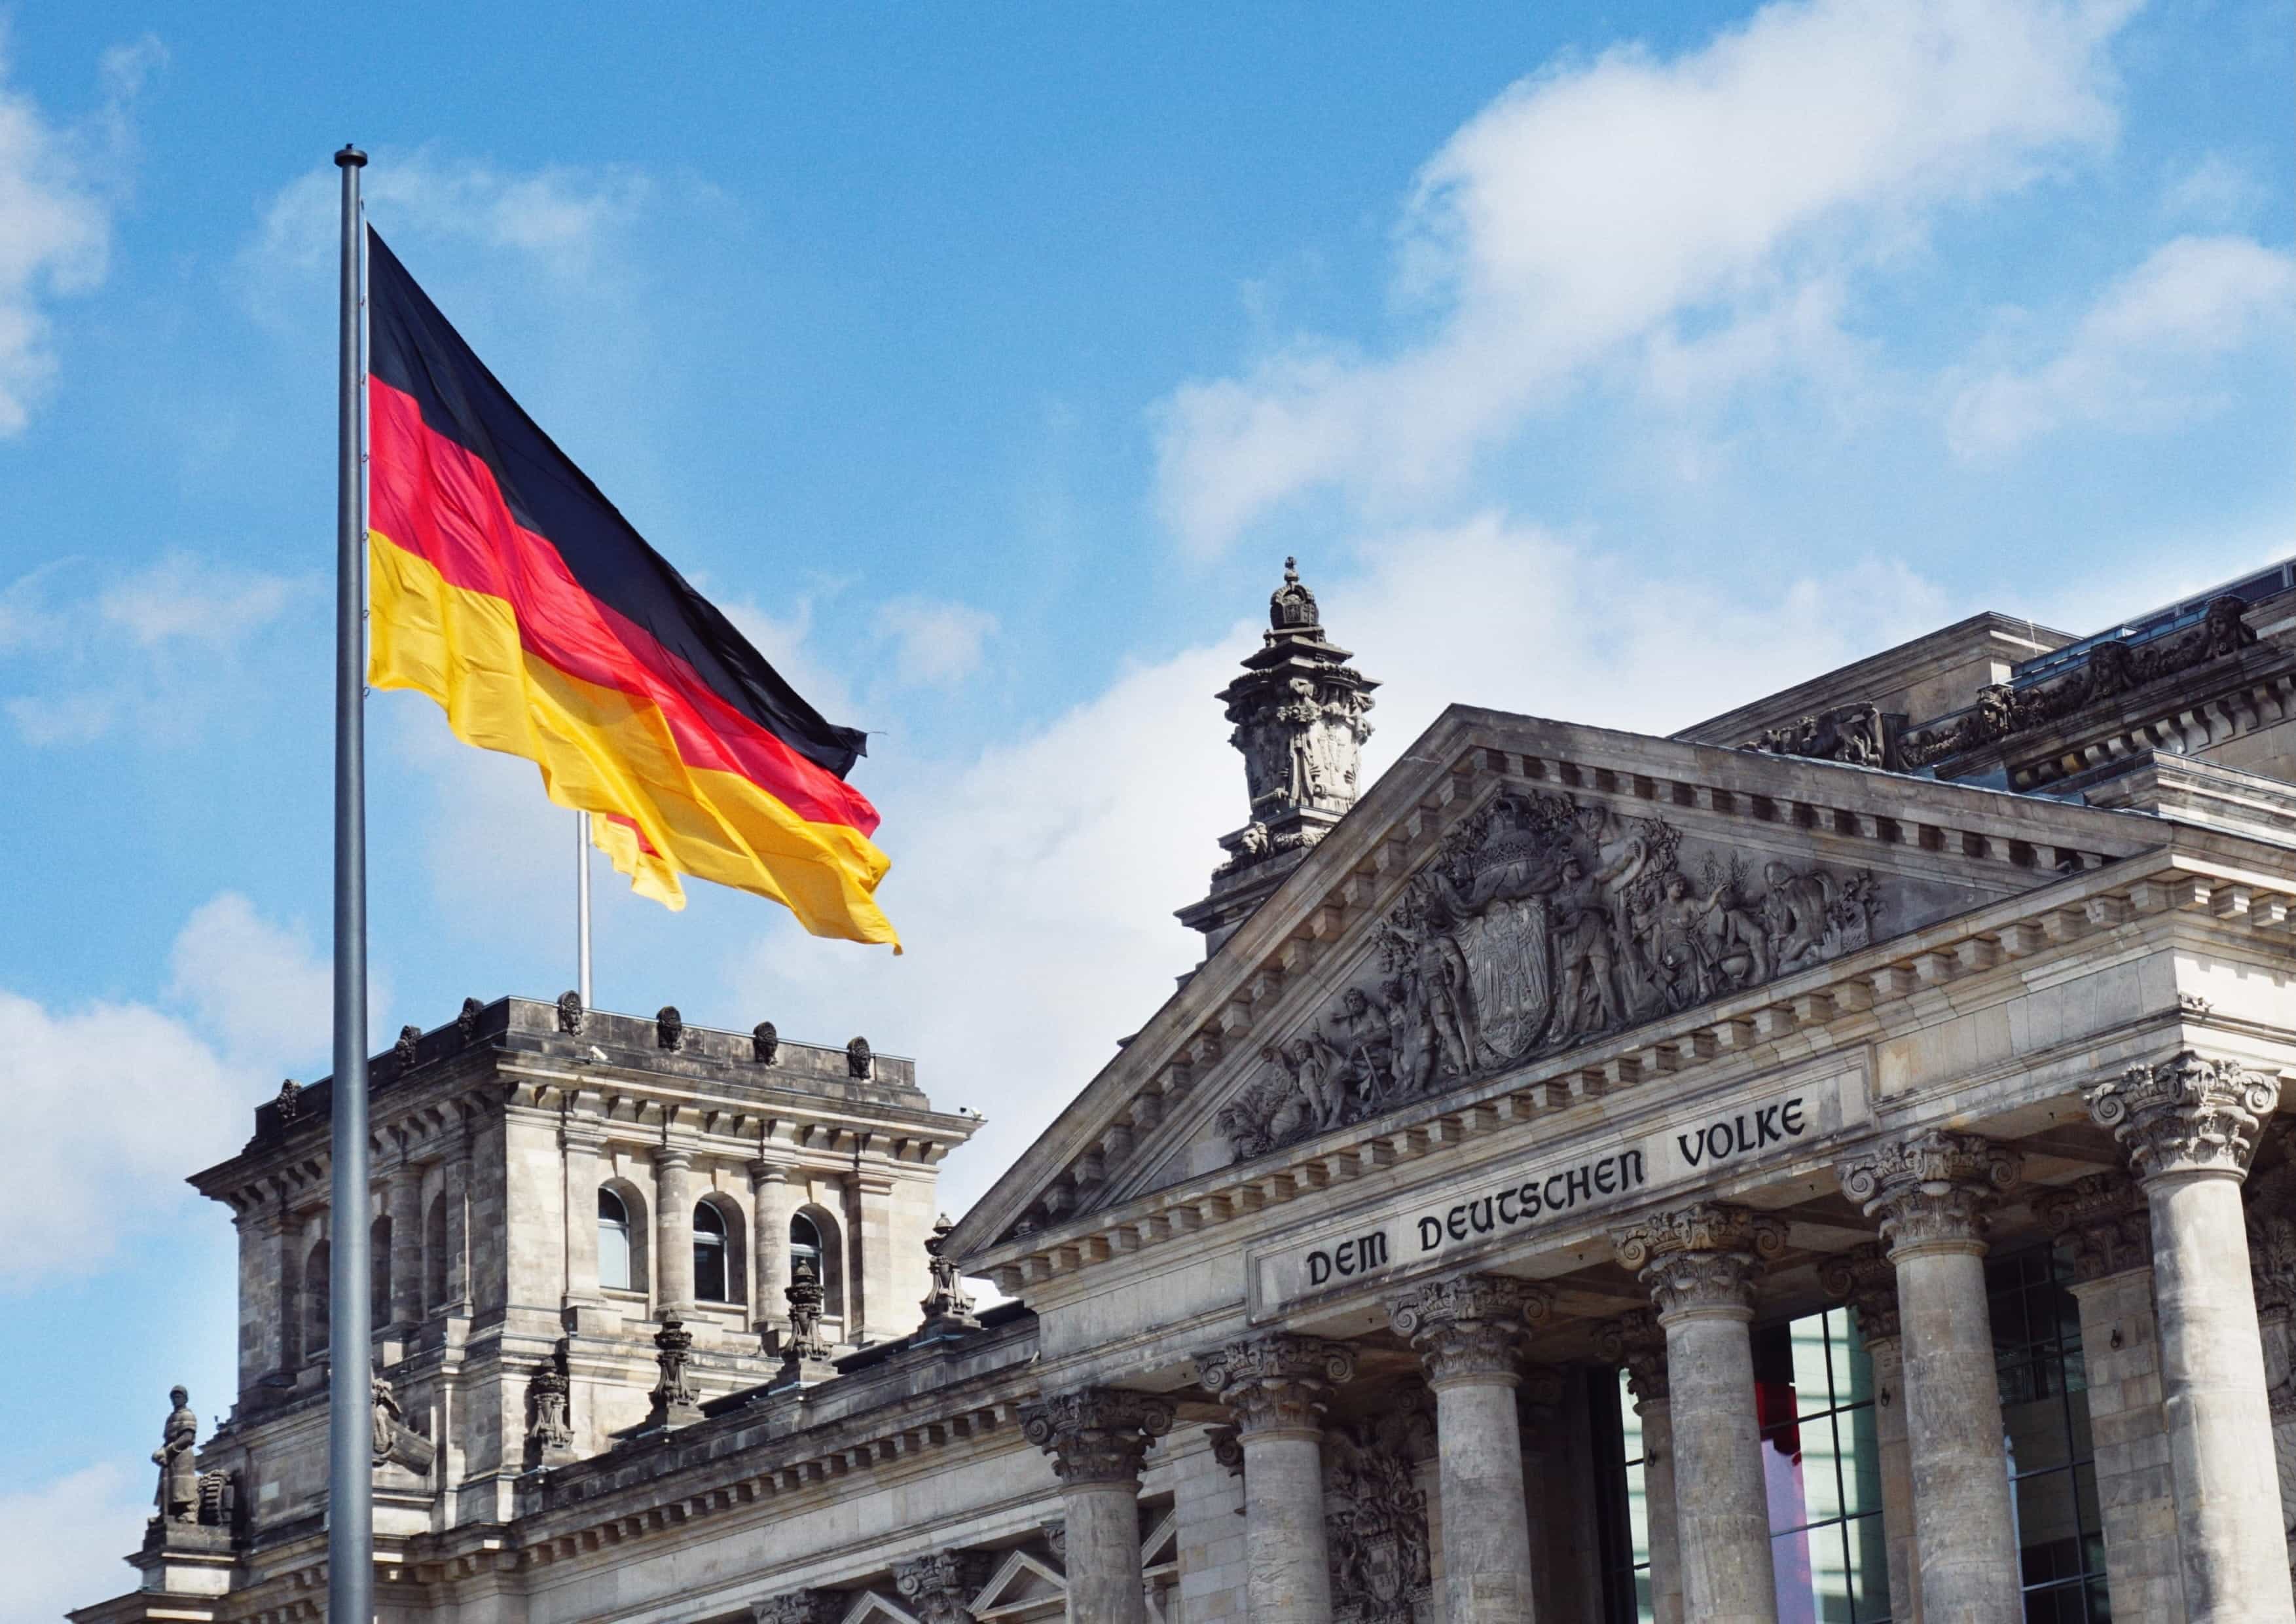 Bendera nasional Jerman berkibar di depan gedung Parlemen Jerman pada hari yang cerah dan biru cerah.